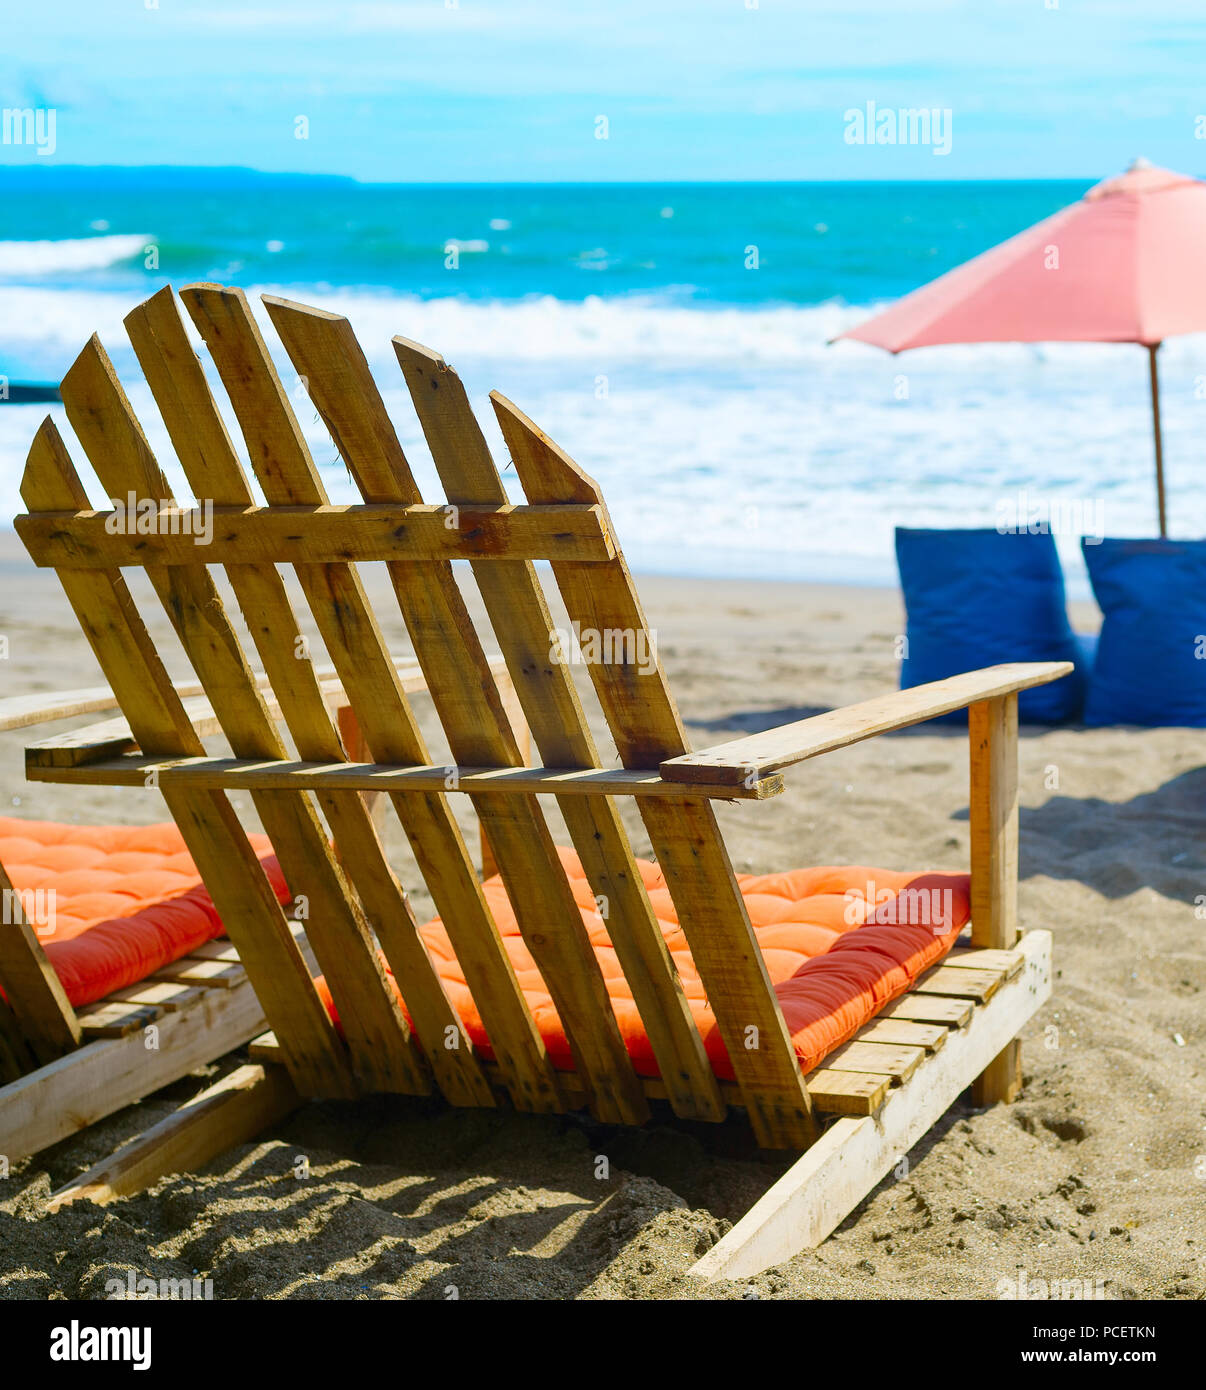 Stuhl, Säcke und Sonnenschirm am tropischen Strand. Die Insel Bali, Indonesien Stockfoto